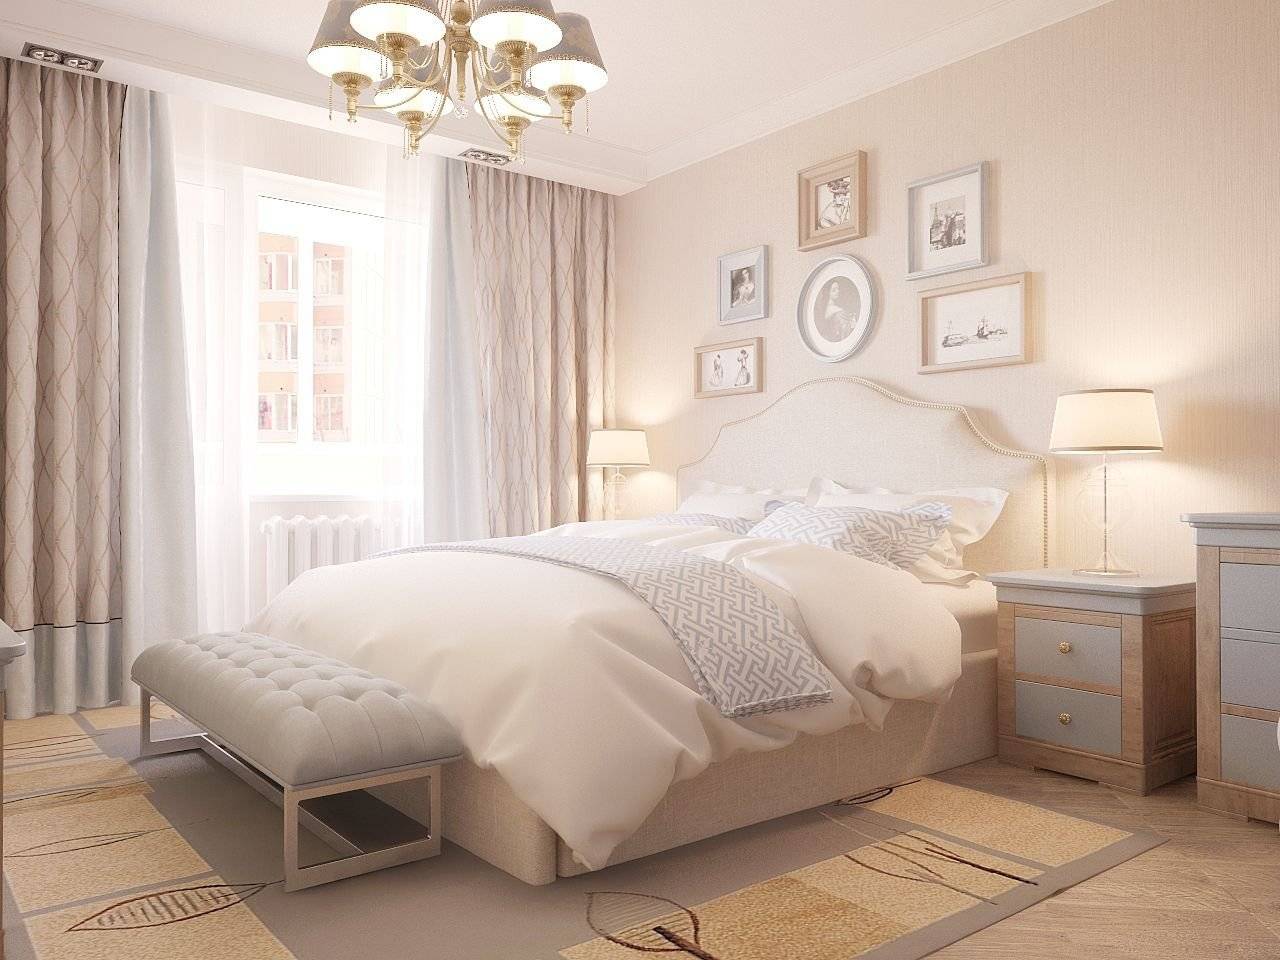 Оформление спальни в пастельных тонах – подбор обоев, деталей